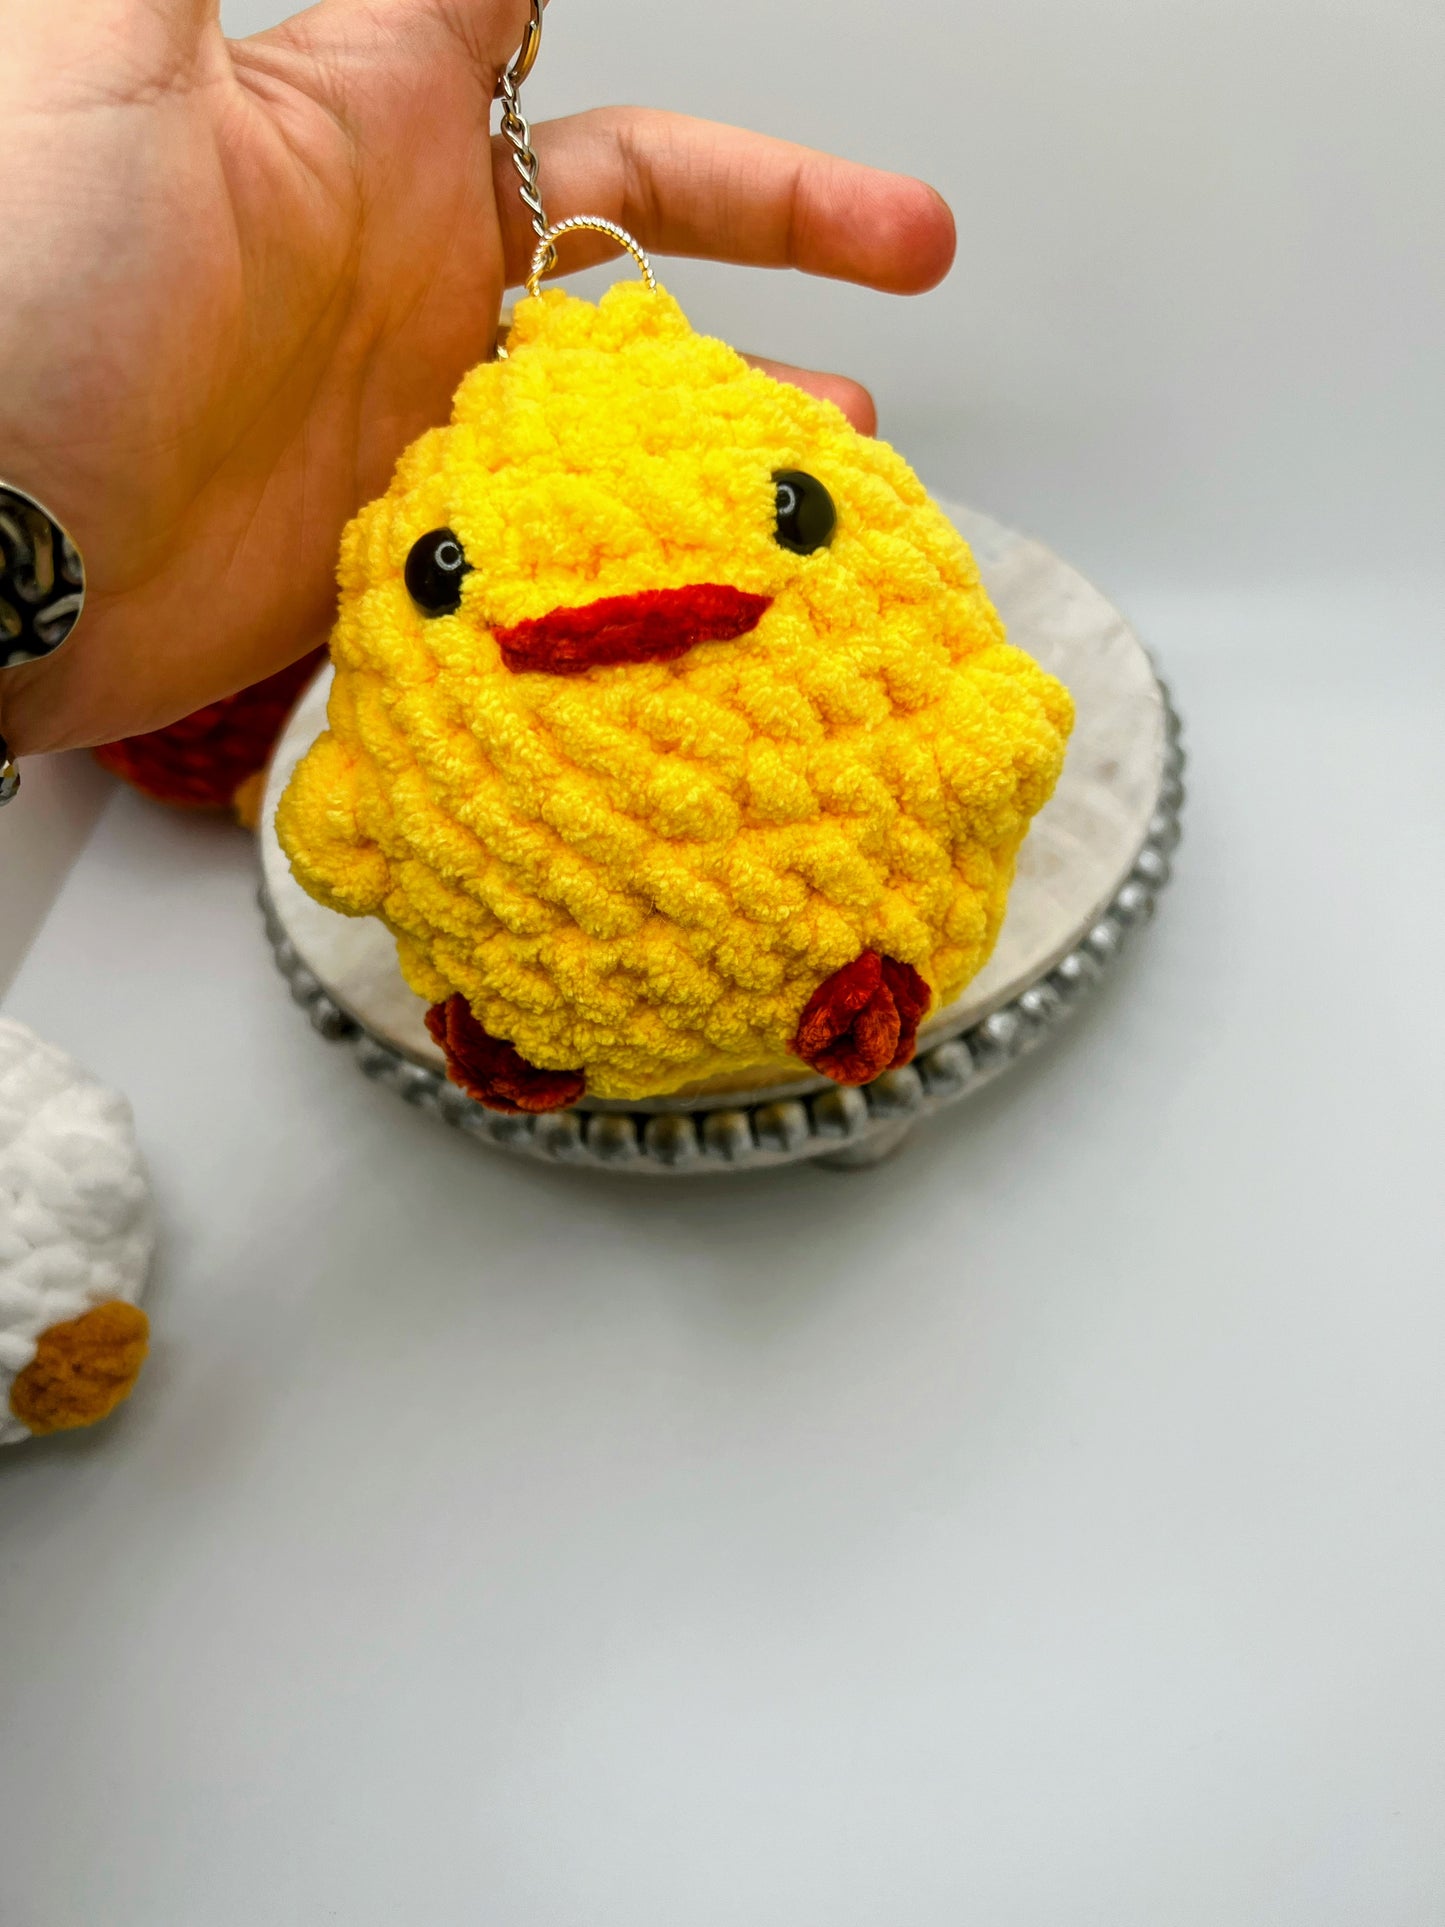 Ducks & Chicken Keychain - Crochet Knitted Amigurumi Toy